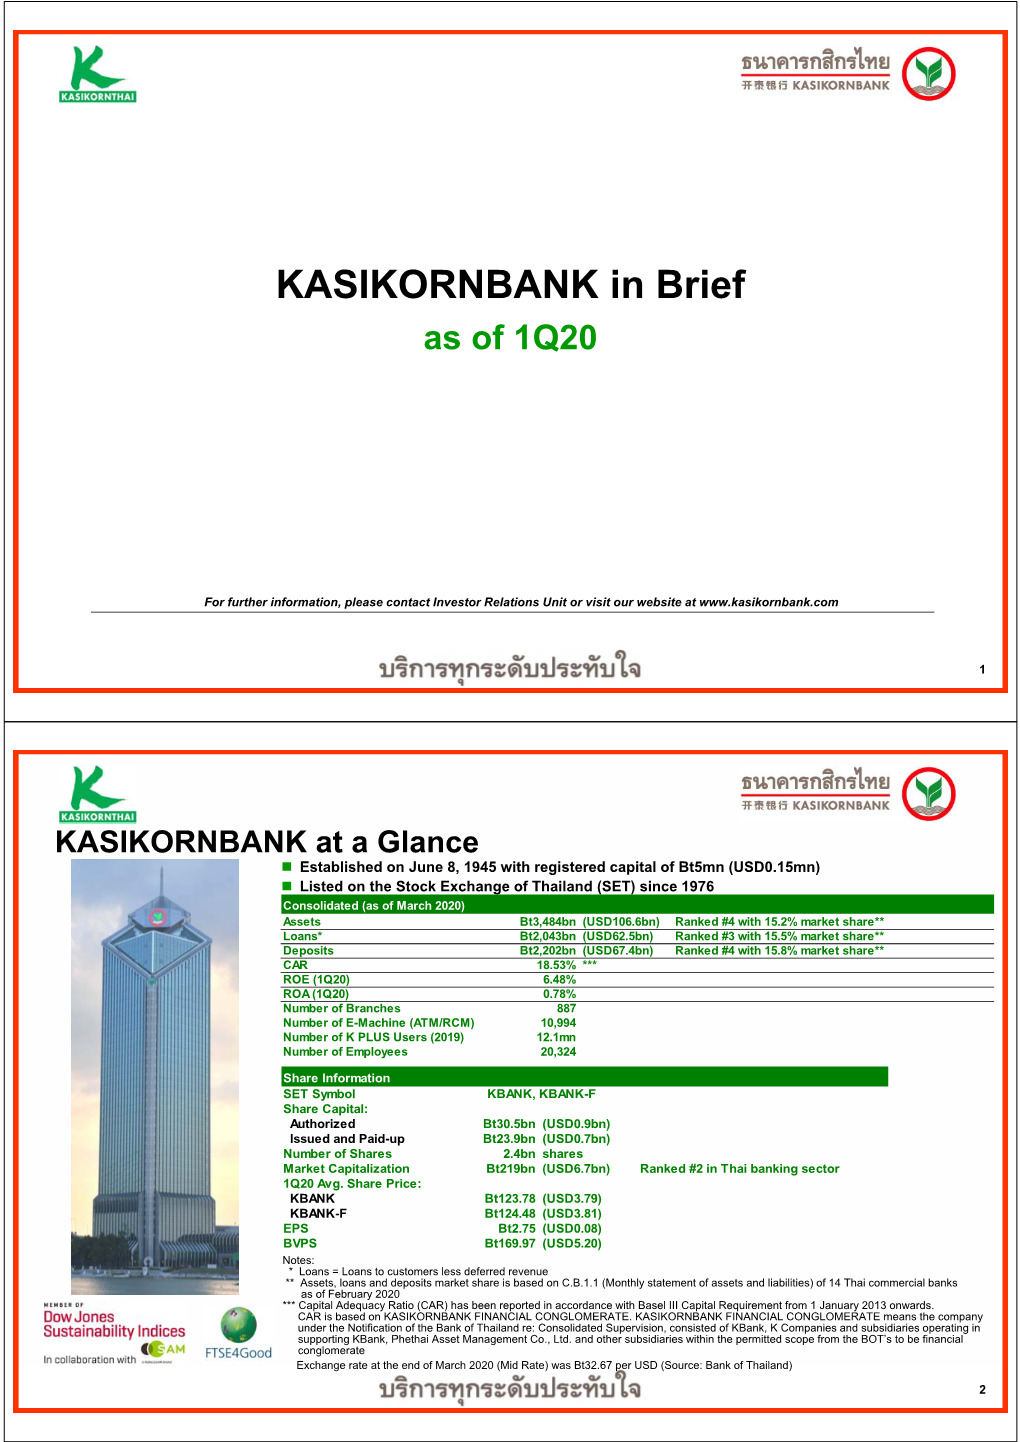 KASIKORNBANK in Brief As of 1Q20